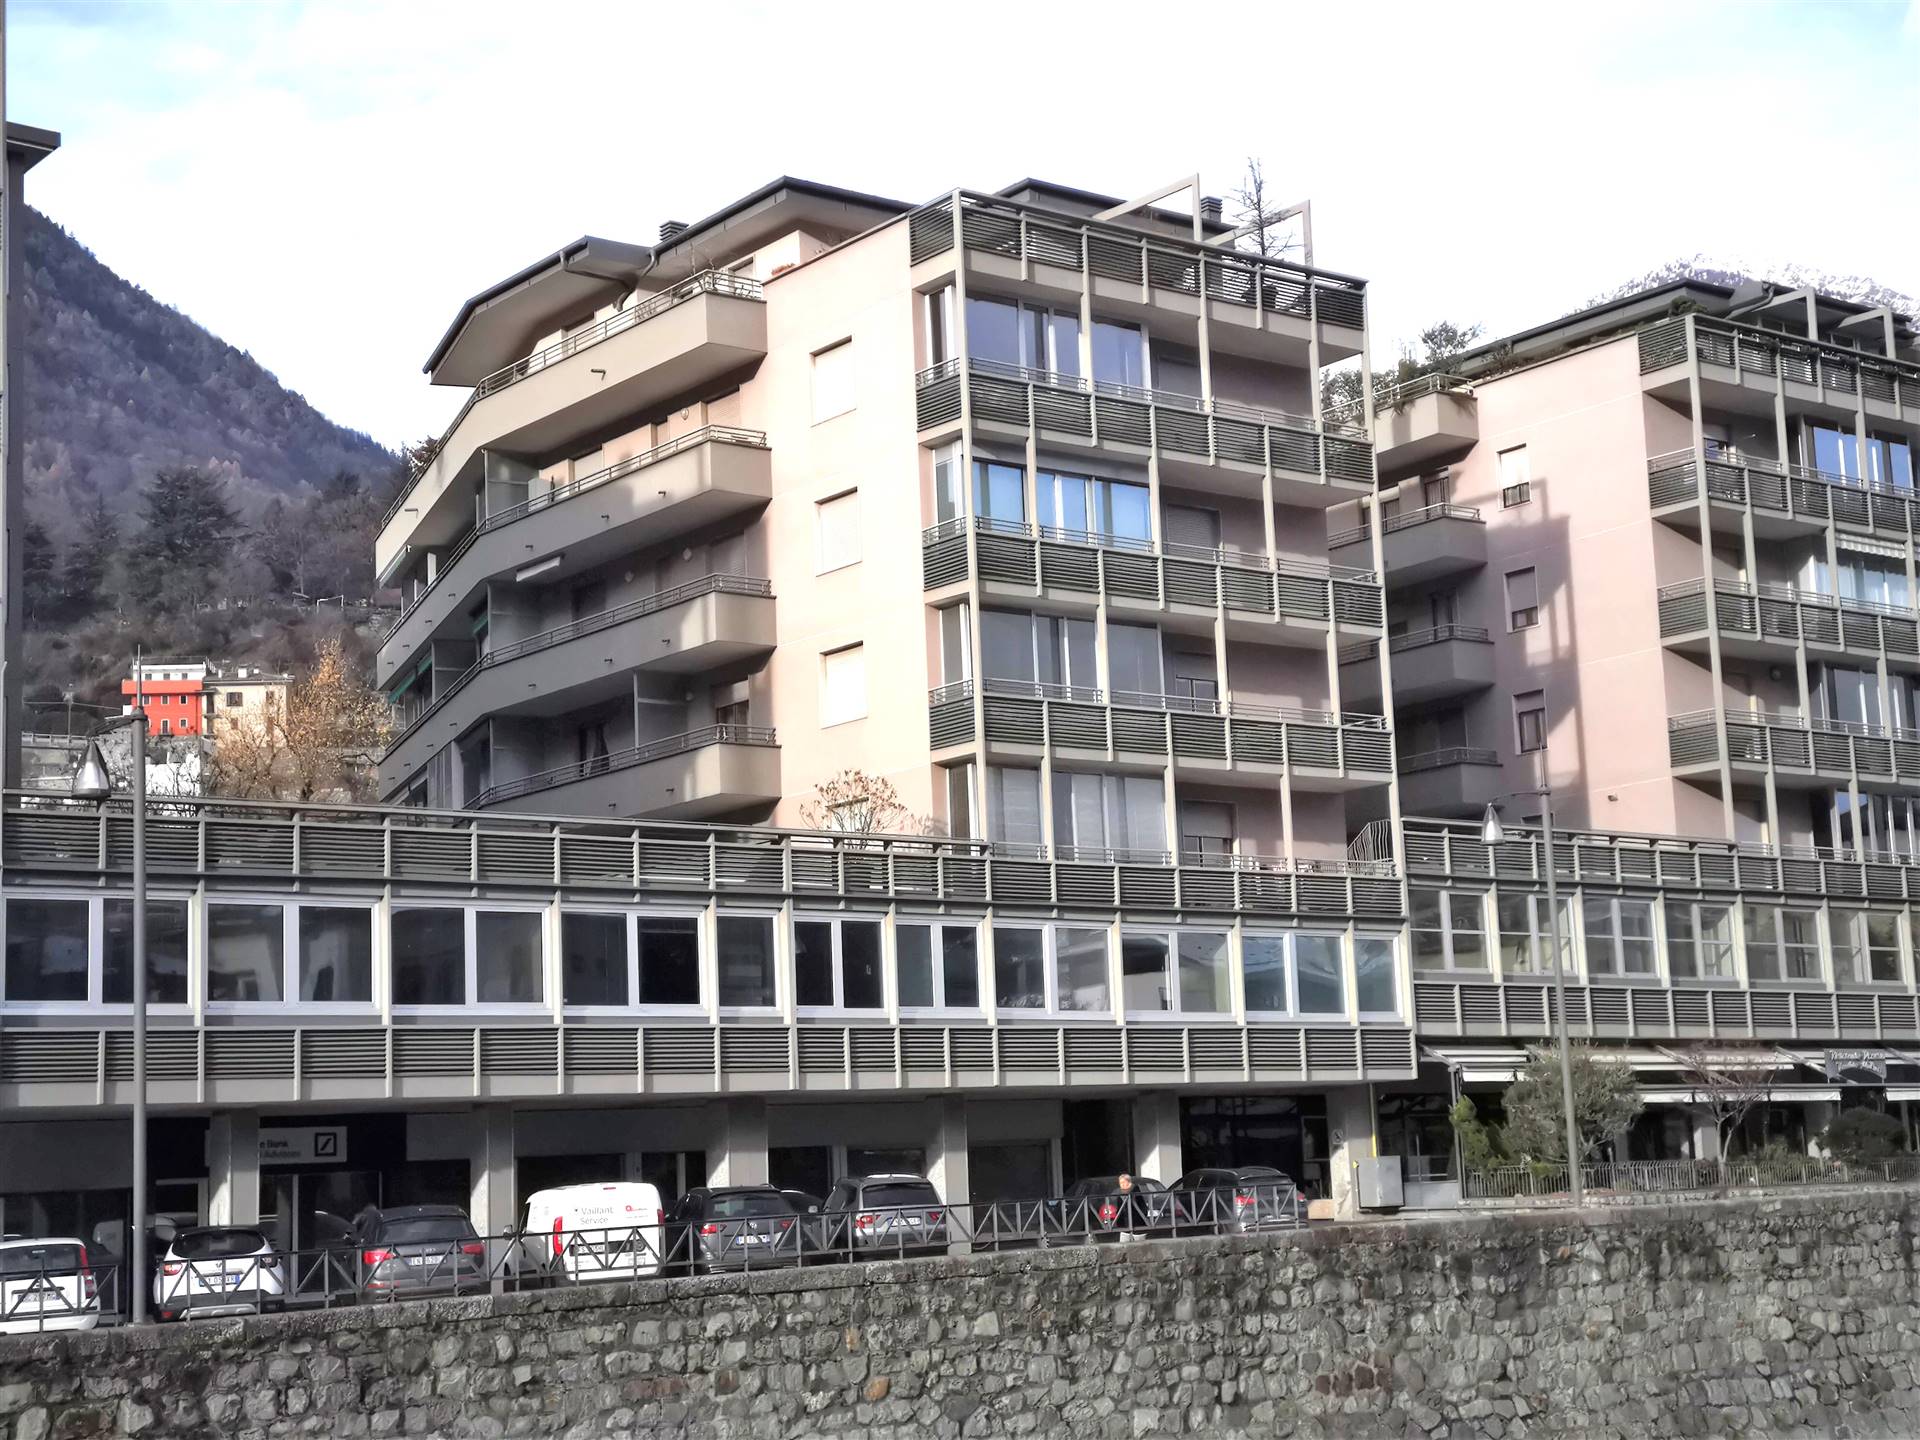 Appartamento in vendita a Sondrio, 6 locali, zona ro zona Garibaldi, prezzo € 173.000 | PortaleAgenzieImmobiliari.it